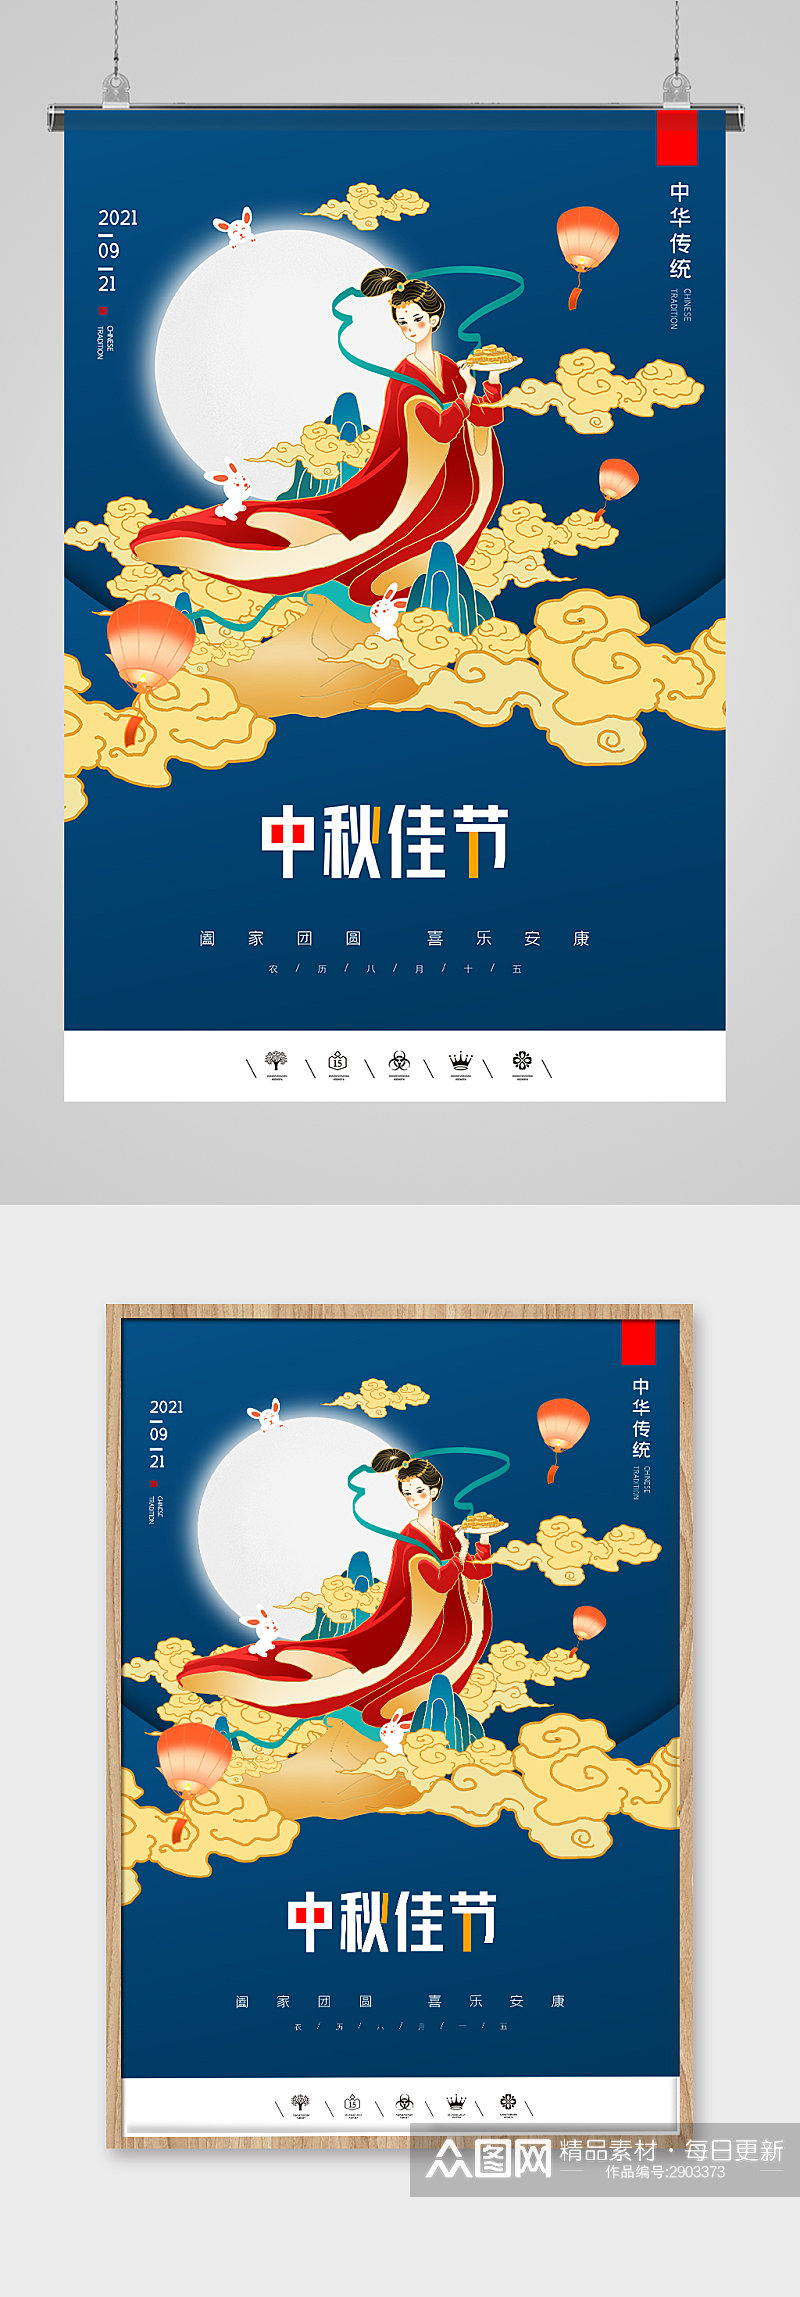 唯美插画人物中秋佳节促销海报设计素材